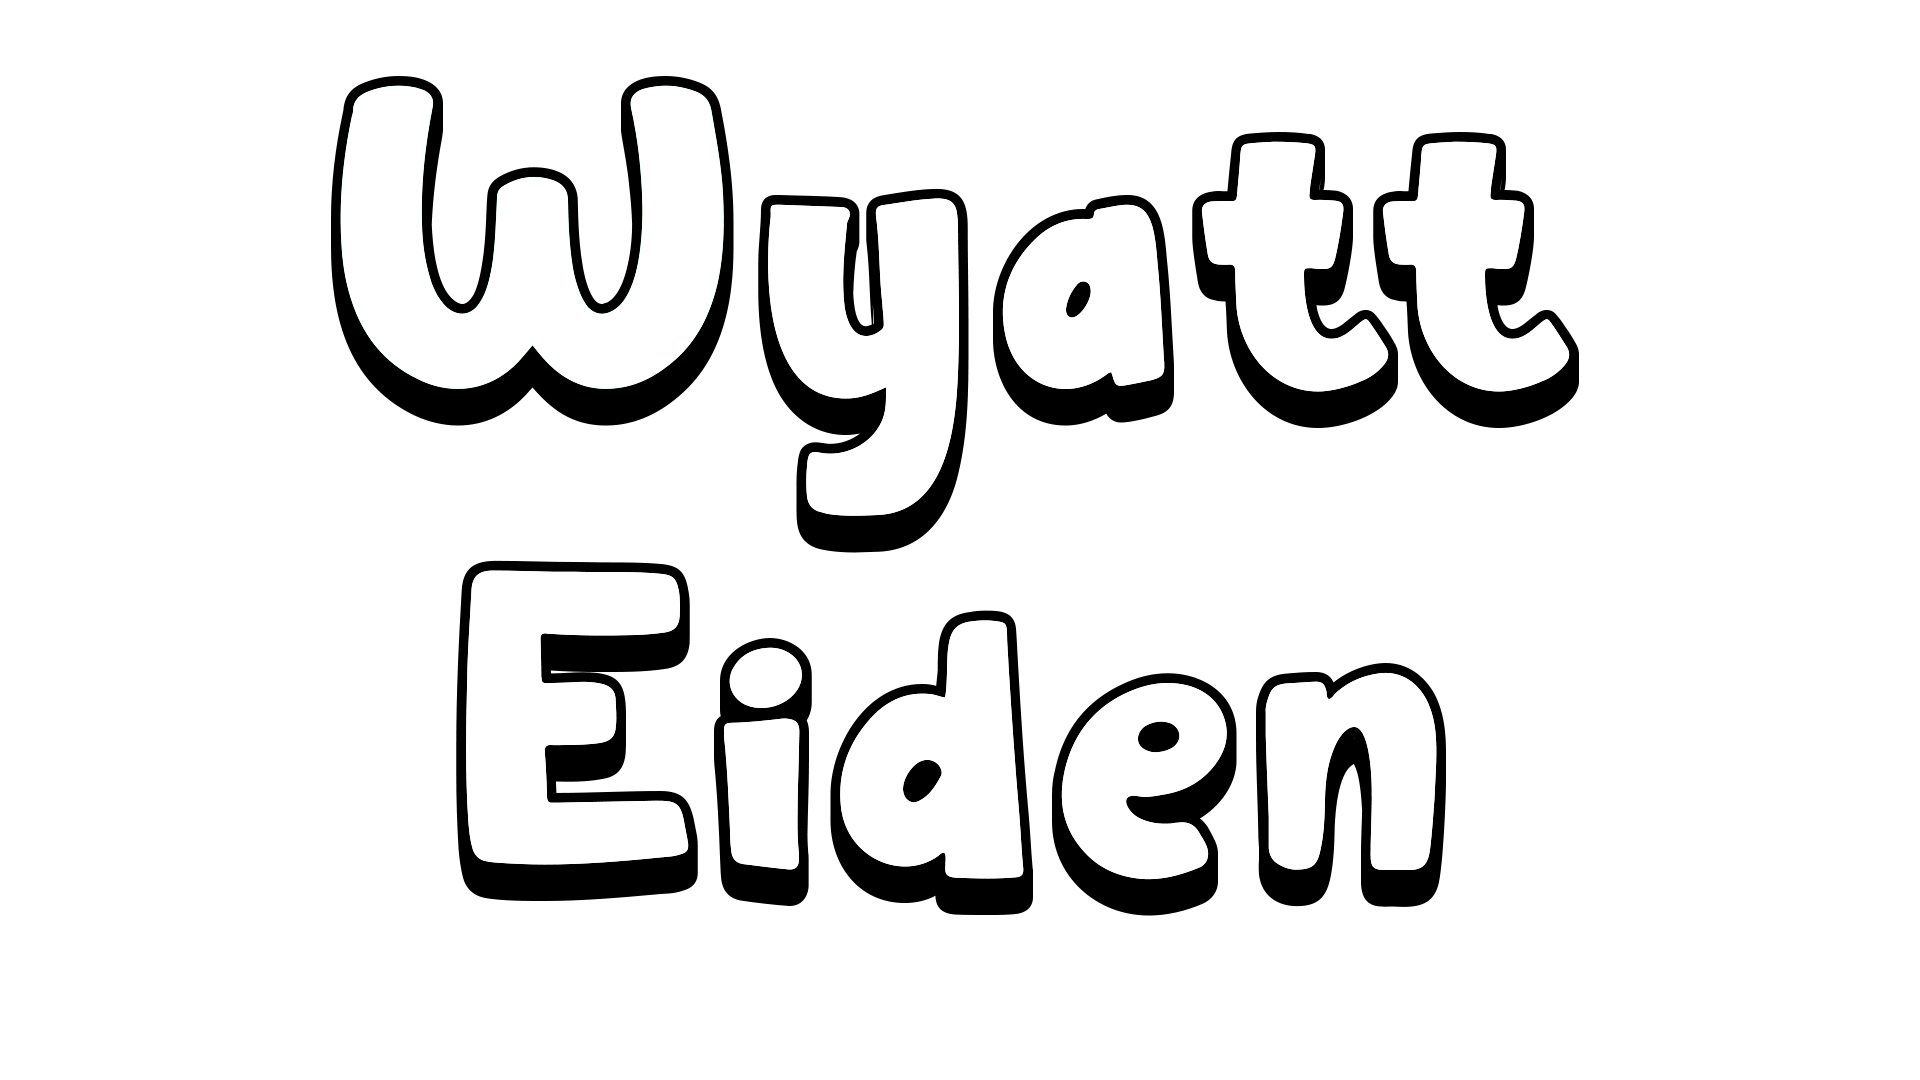 Wyatt Eiden